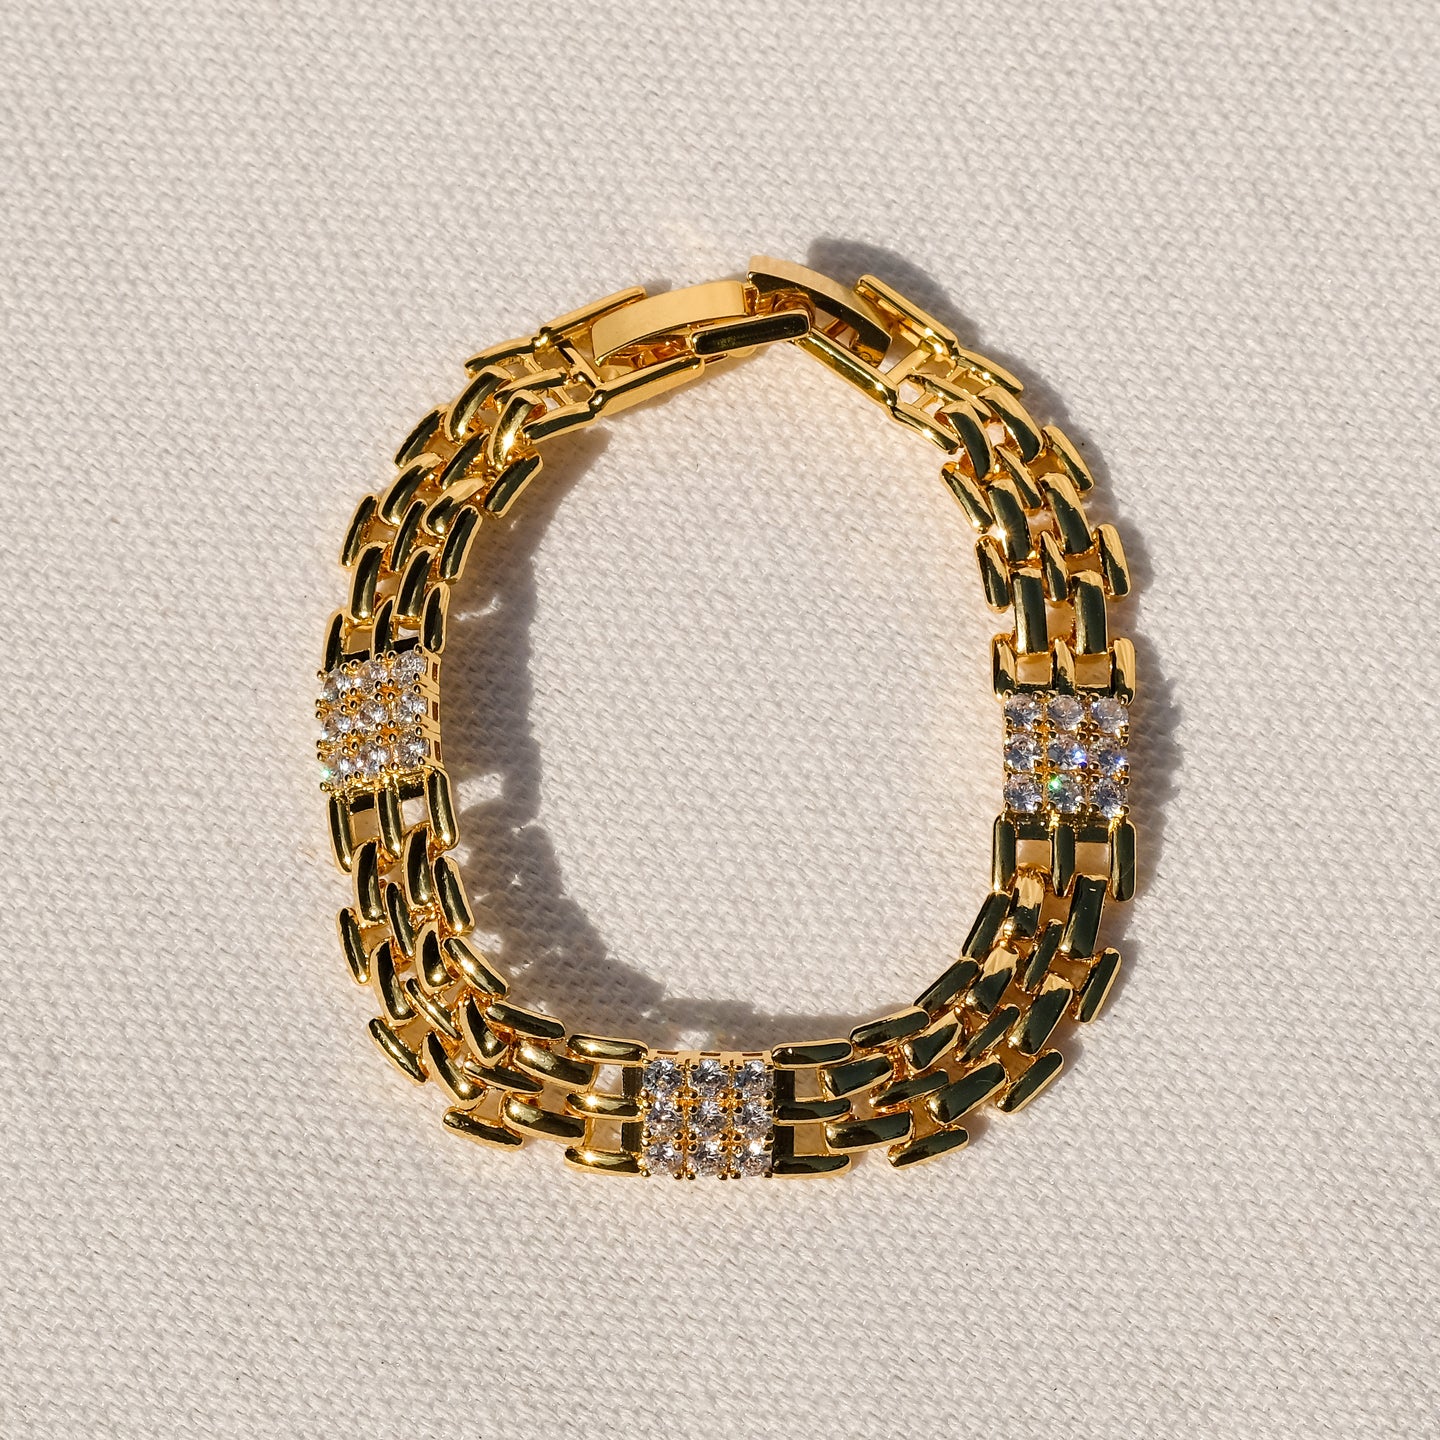 products/cena-cz-bracelet-18k-gold-plated-1.jpg